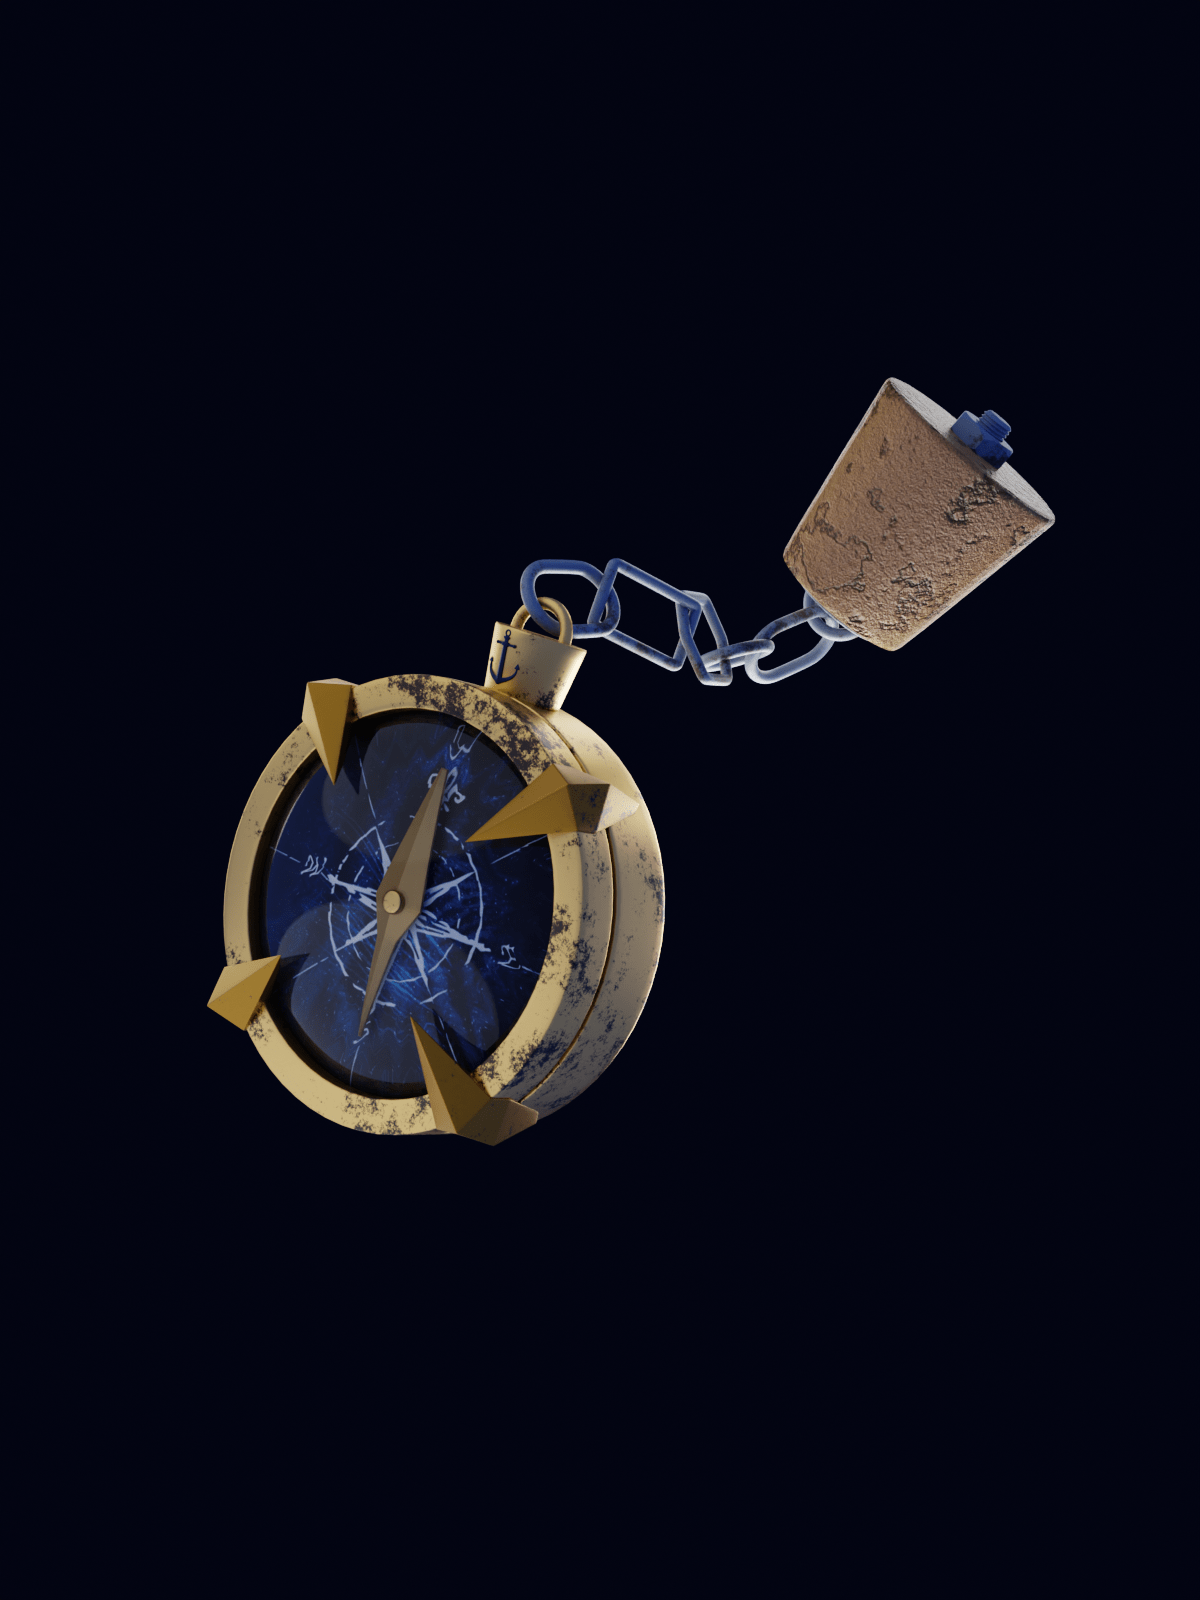 3D anchor compass Ocean sea Spyglass steering wheel underwater